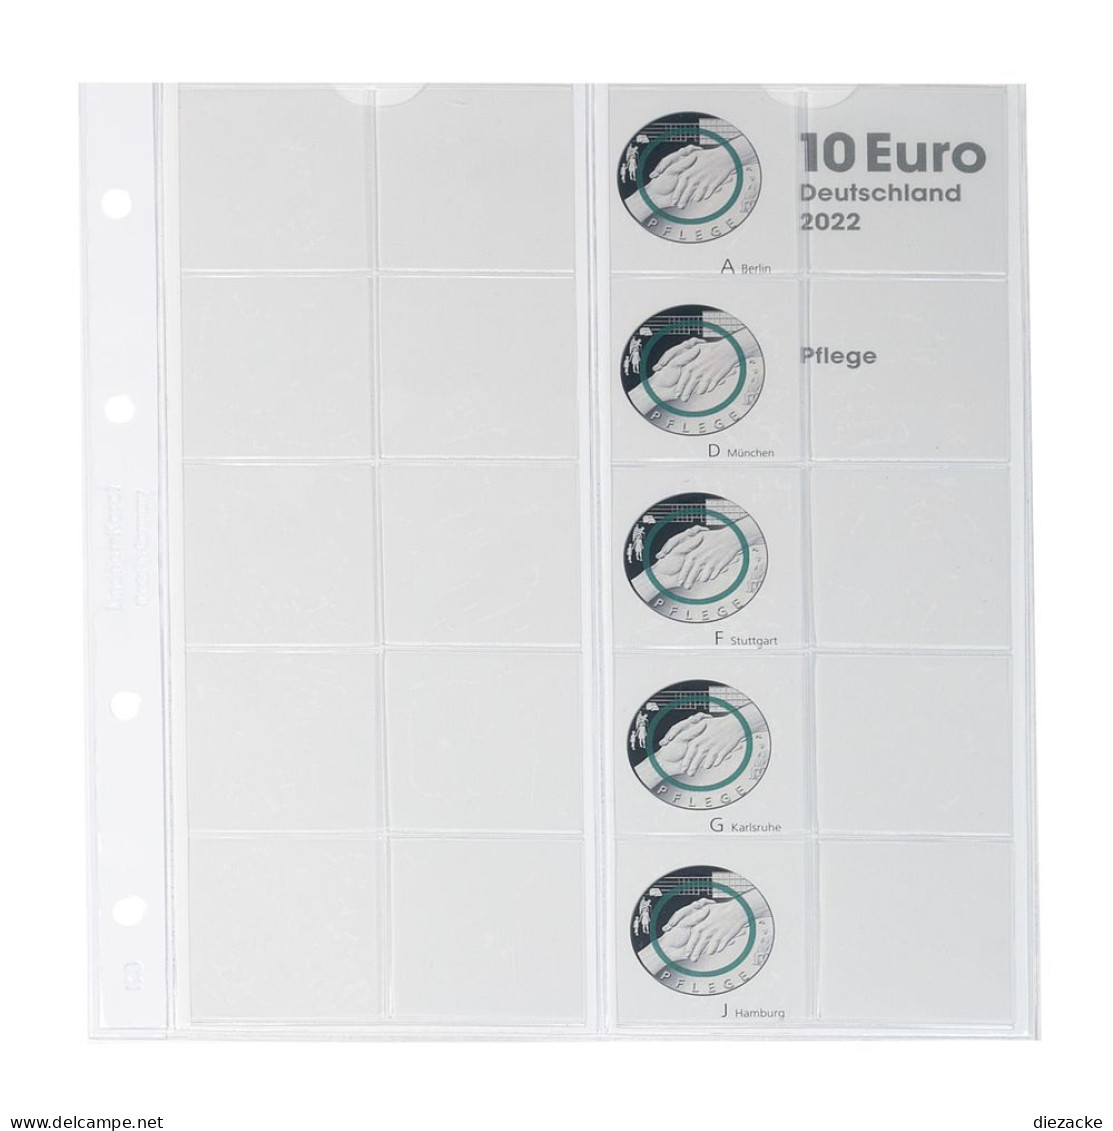 Lindner Vordruckblatt Karat Für 10 Euro-Münzen Polymerring 1110-4 Neu - Supplies And Equipment